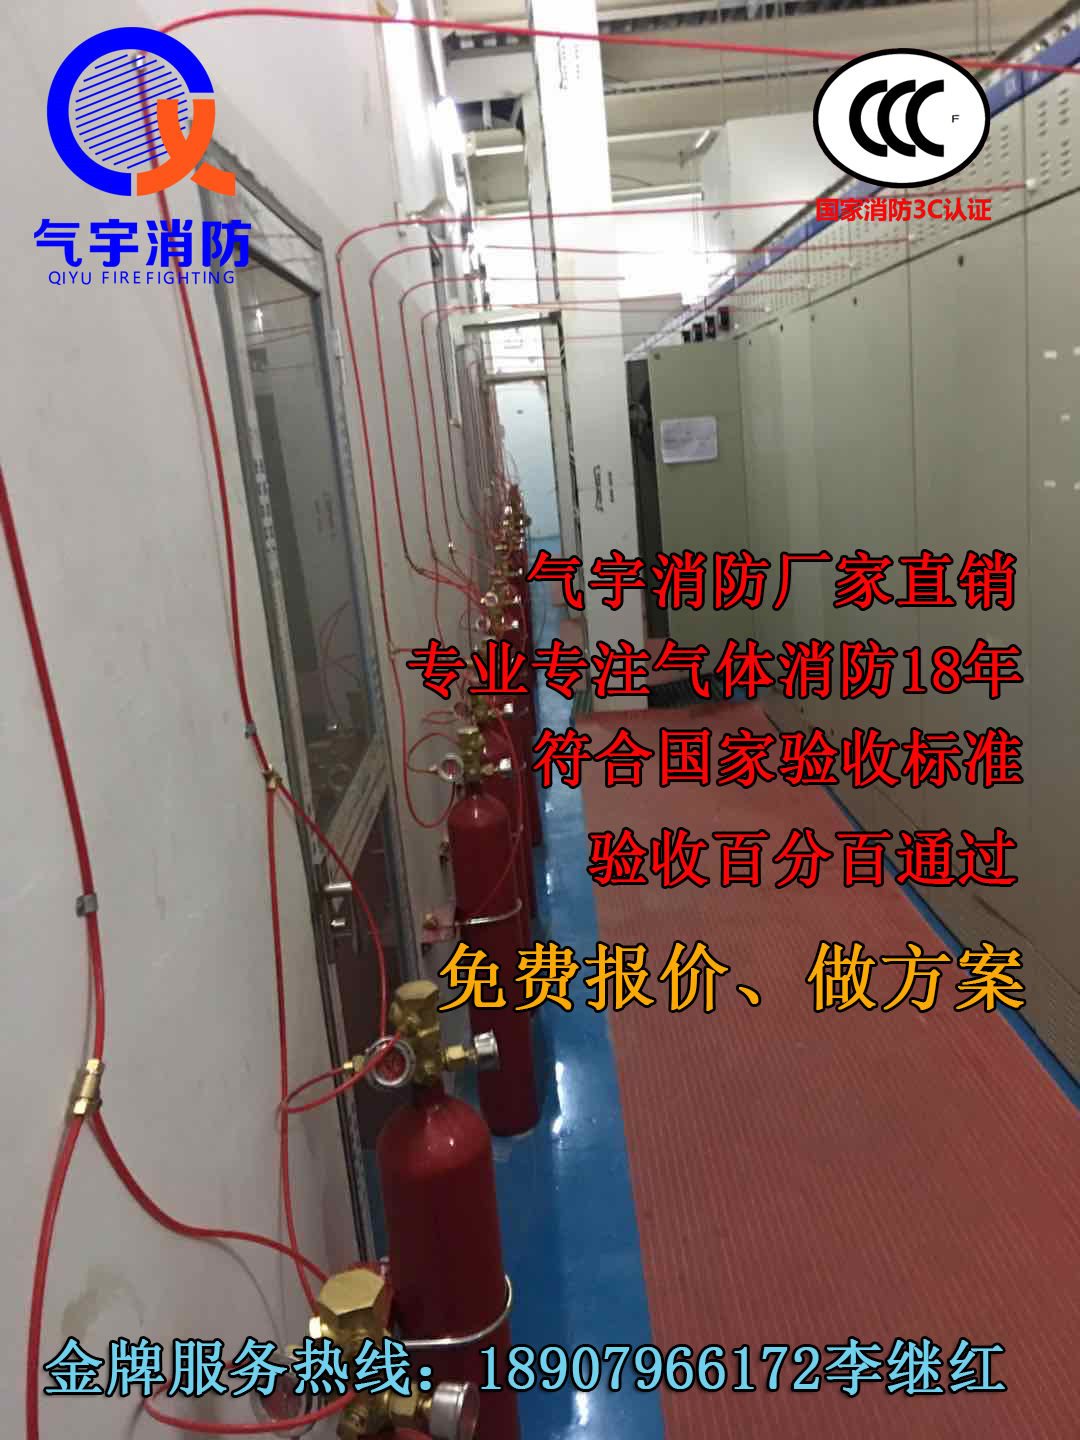 全国热销产品 火探管感温自启动灭火装置 广州气宇消防质美价优图片